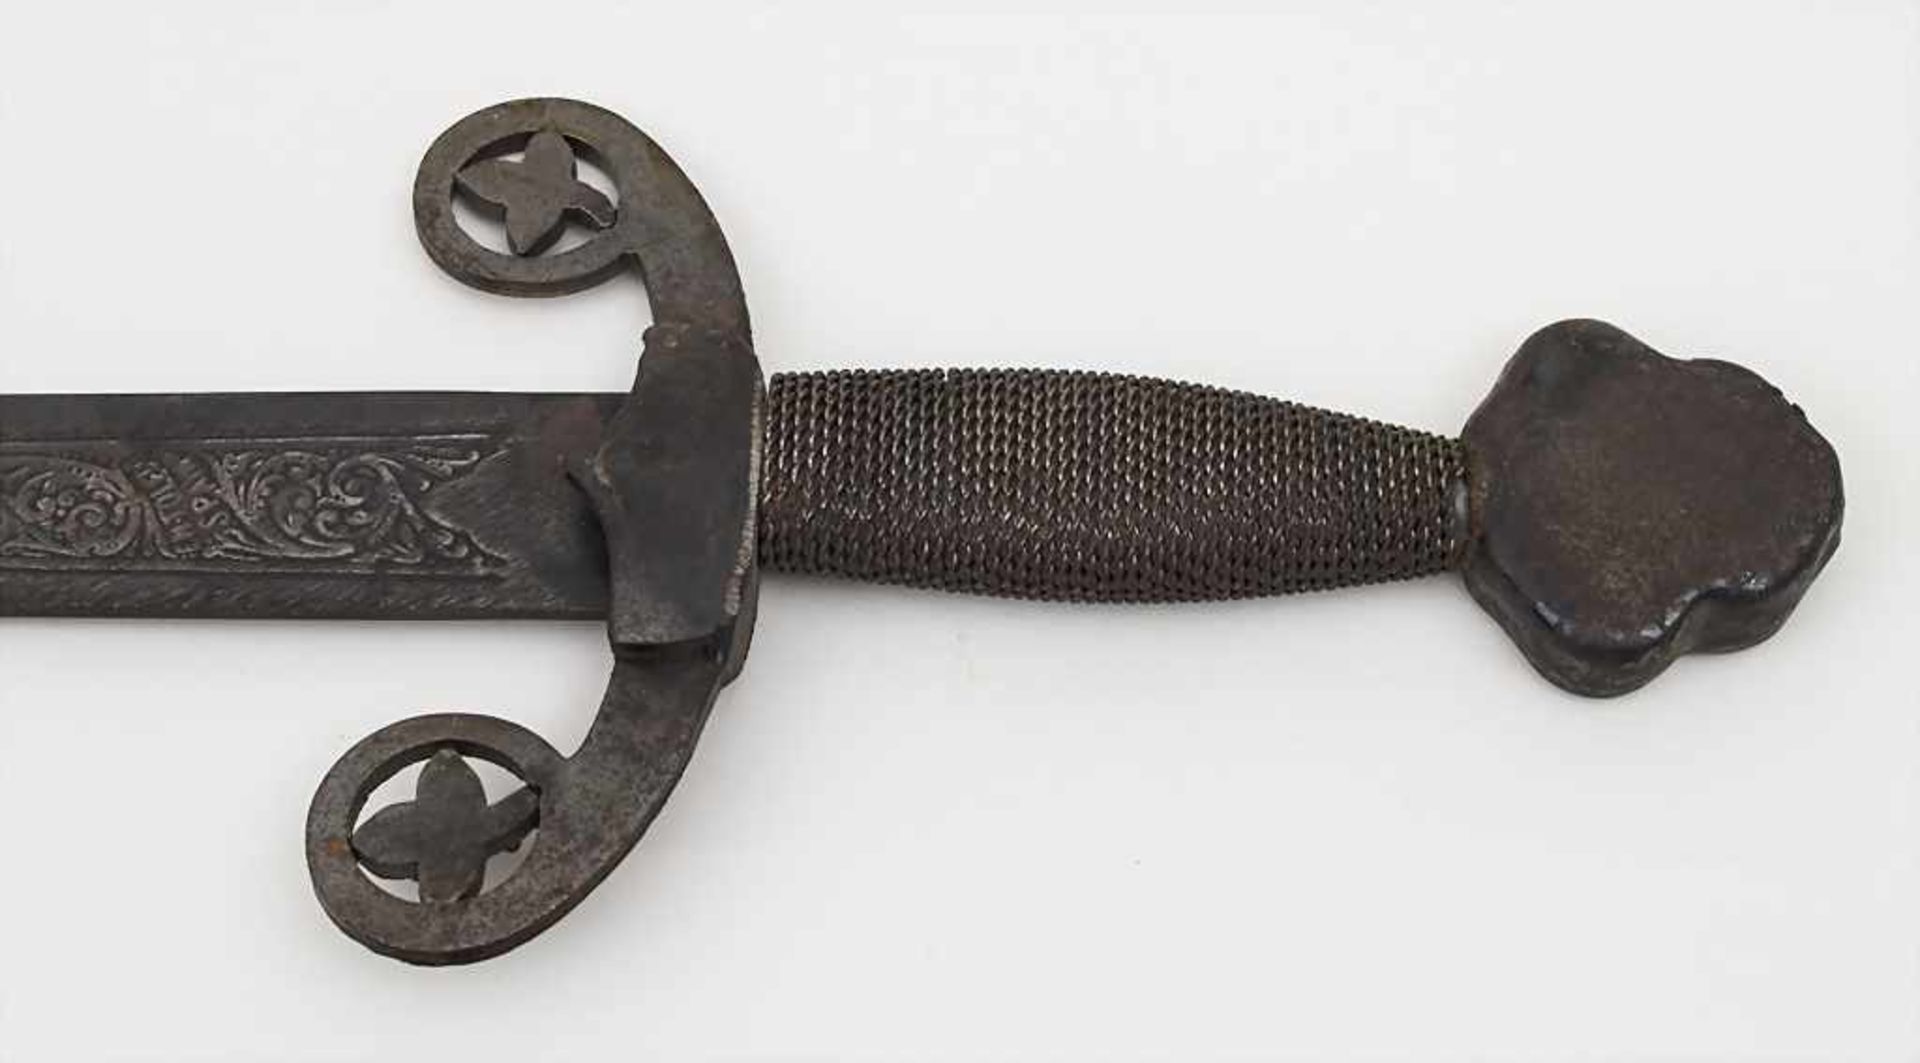 Spanischer Degen, Toledo / A spanish sword, Replik Material: Stahl, mit ziseliertem Blatt,